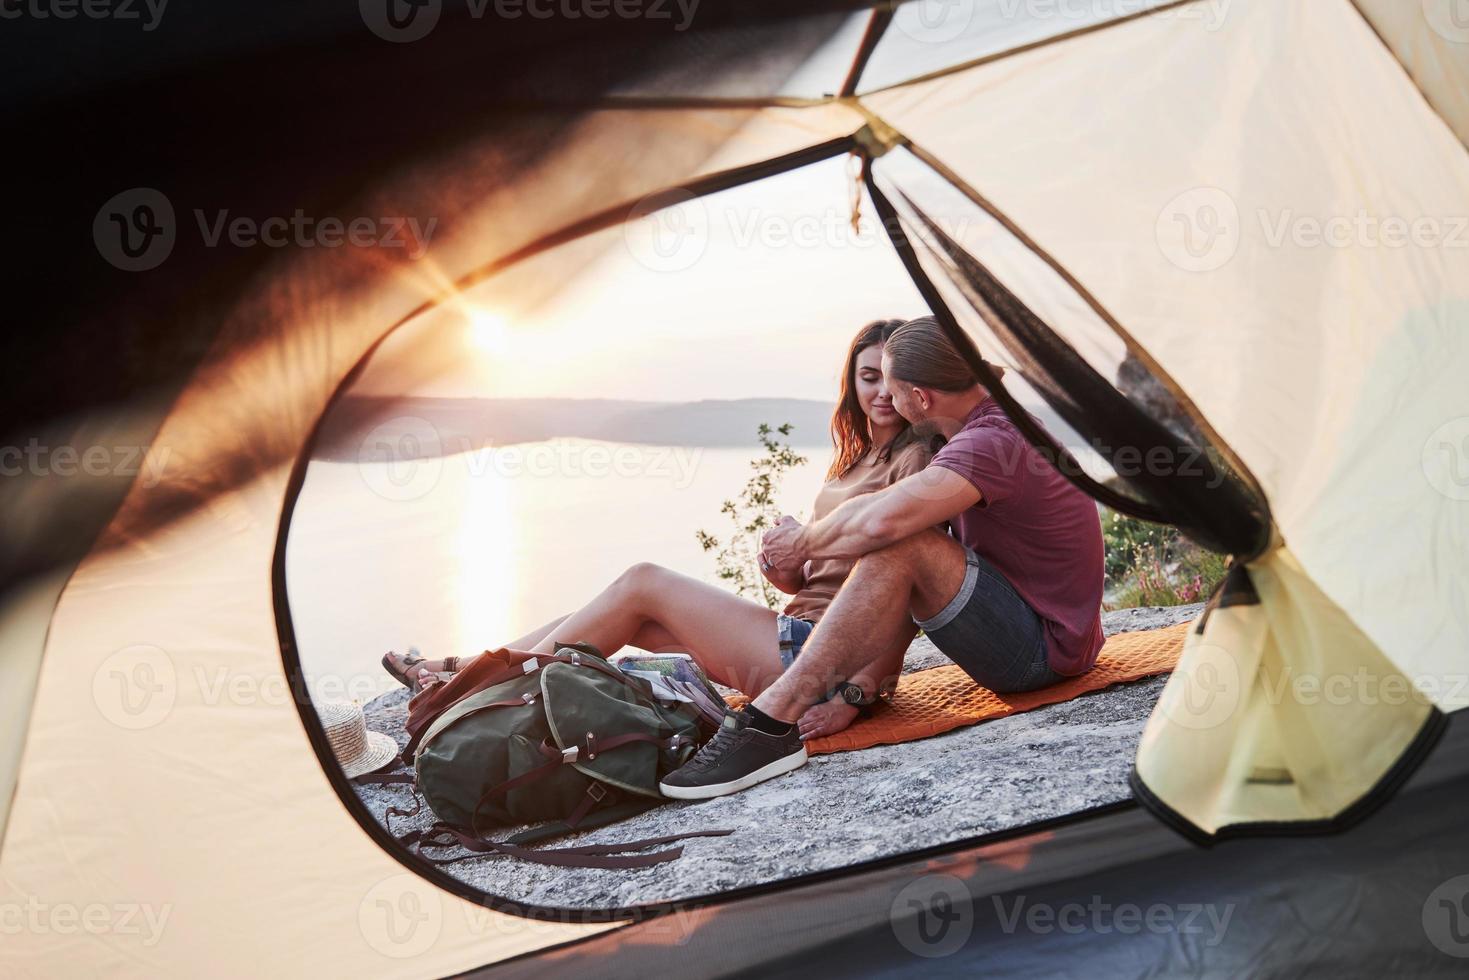 vista da tenda do casal deitado uma vista do lago durante a caminhada. conceito de estilo de vida avel aventura férias ao ar livre foto